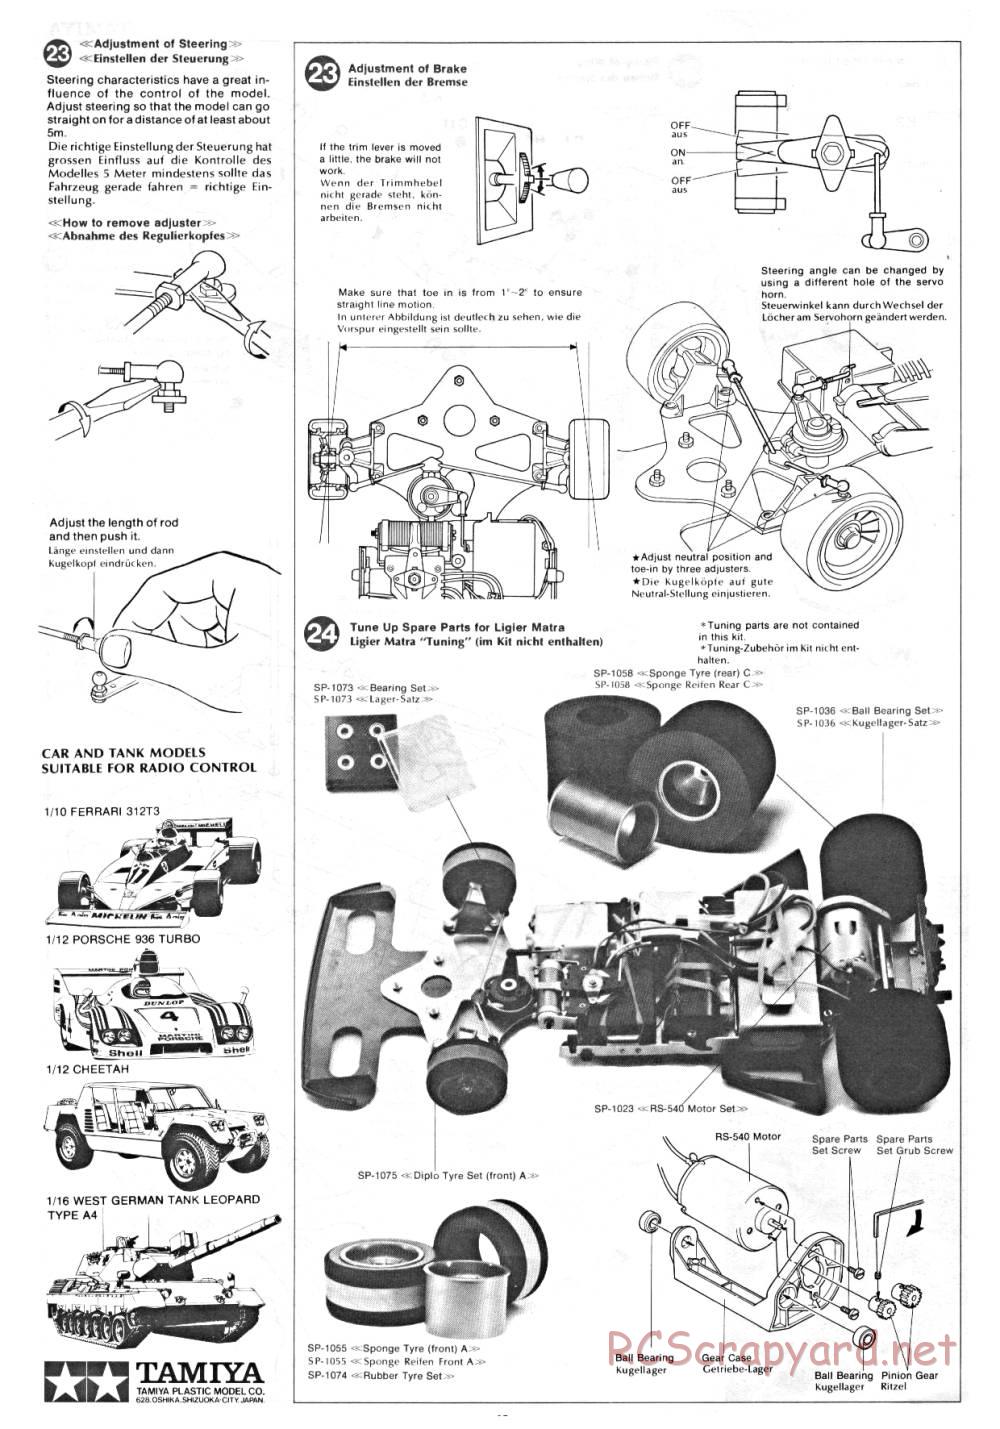 Tamiya - Ligier JS9 Matra - 58010 - Manual - Page 12